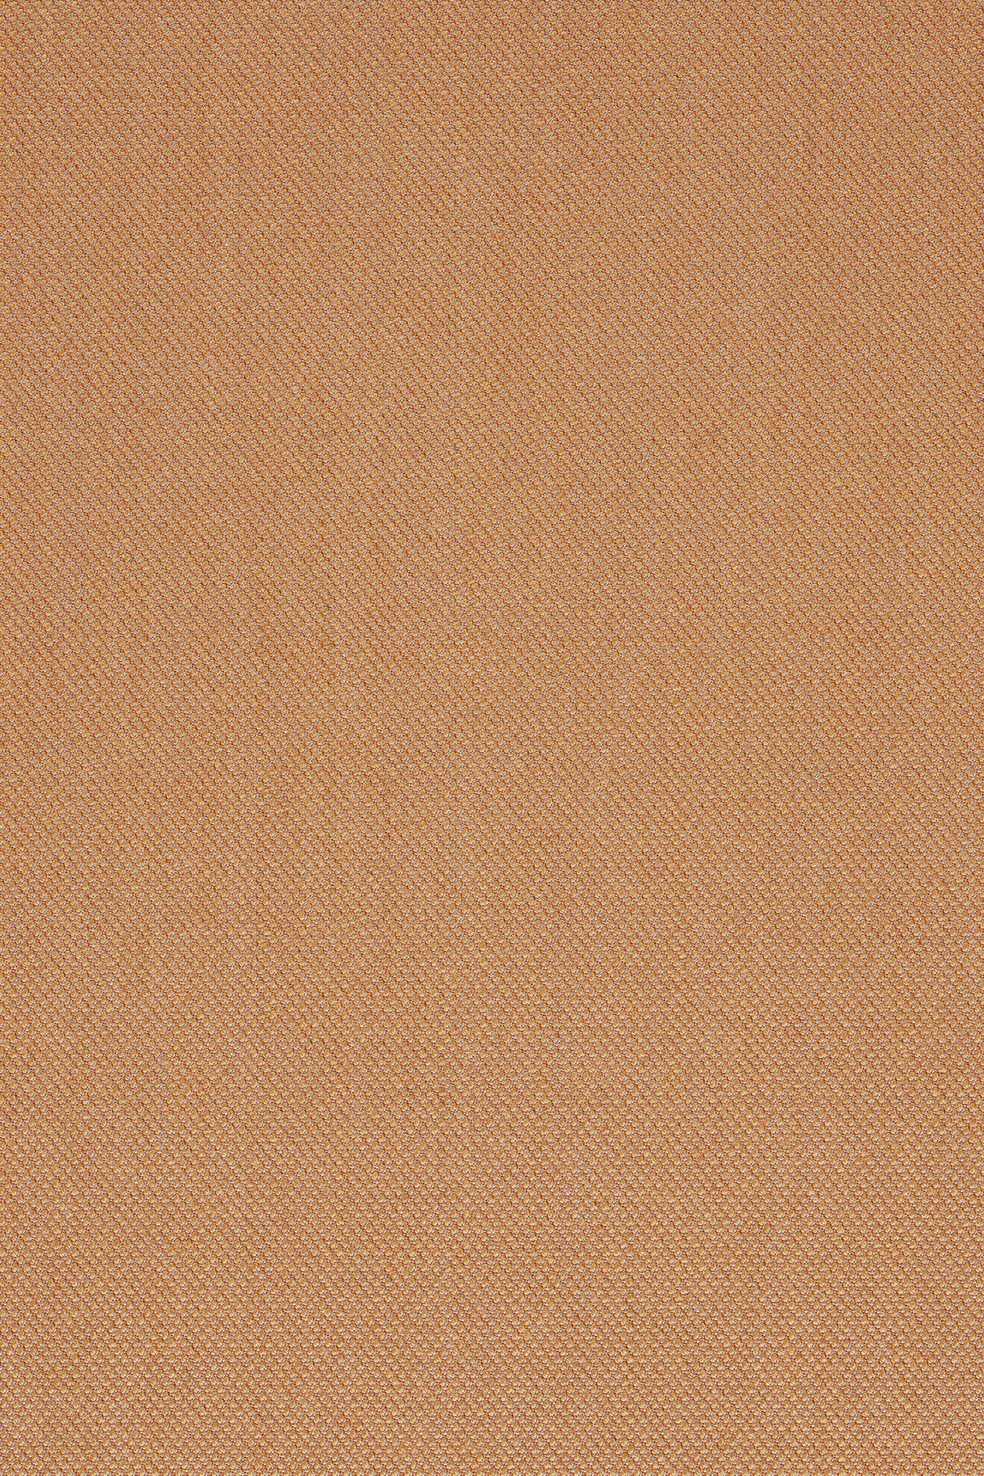 Fabric sample Steelcut Trio 3 436 orange